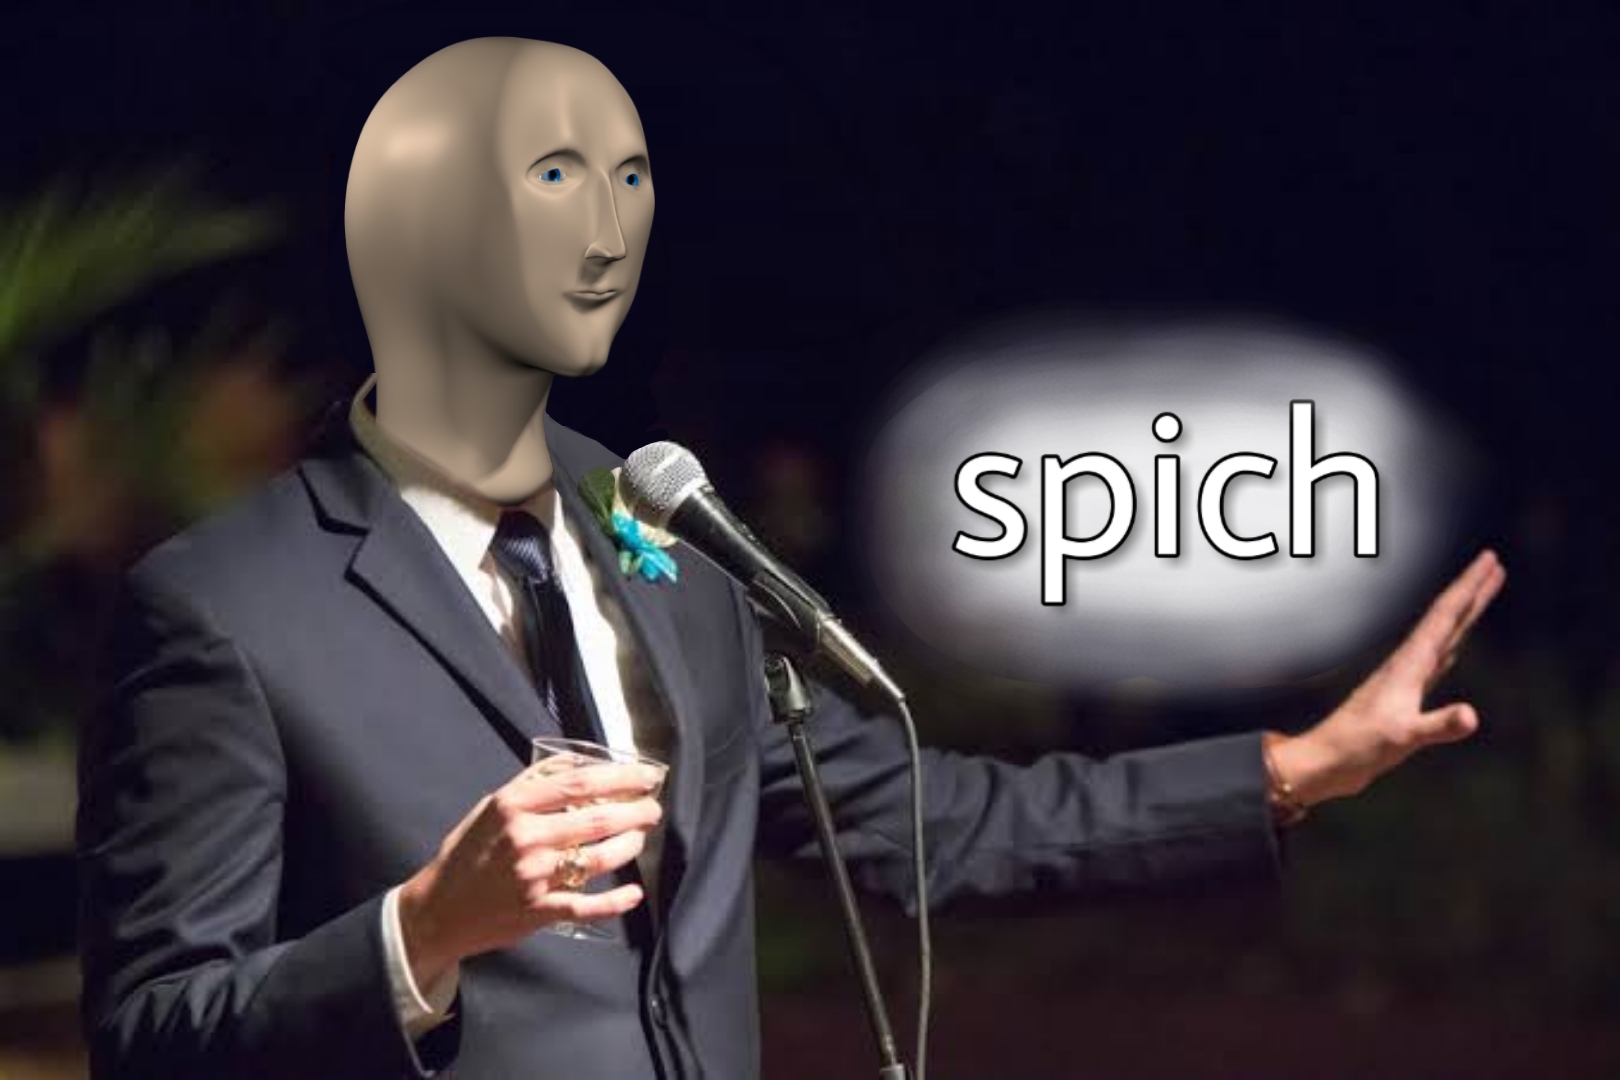 Meme Man "Spich" Template (Speech) Blank Meme Template